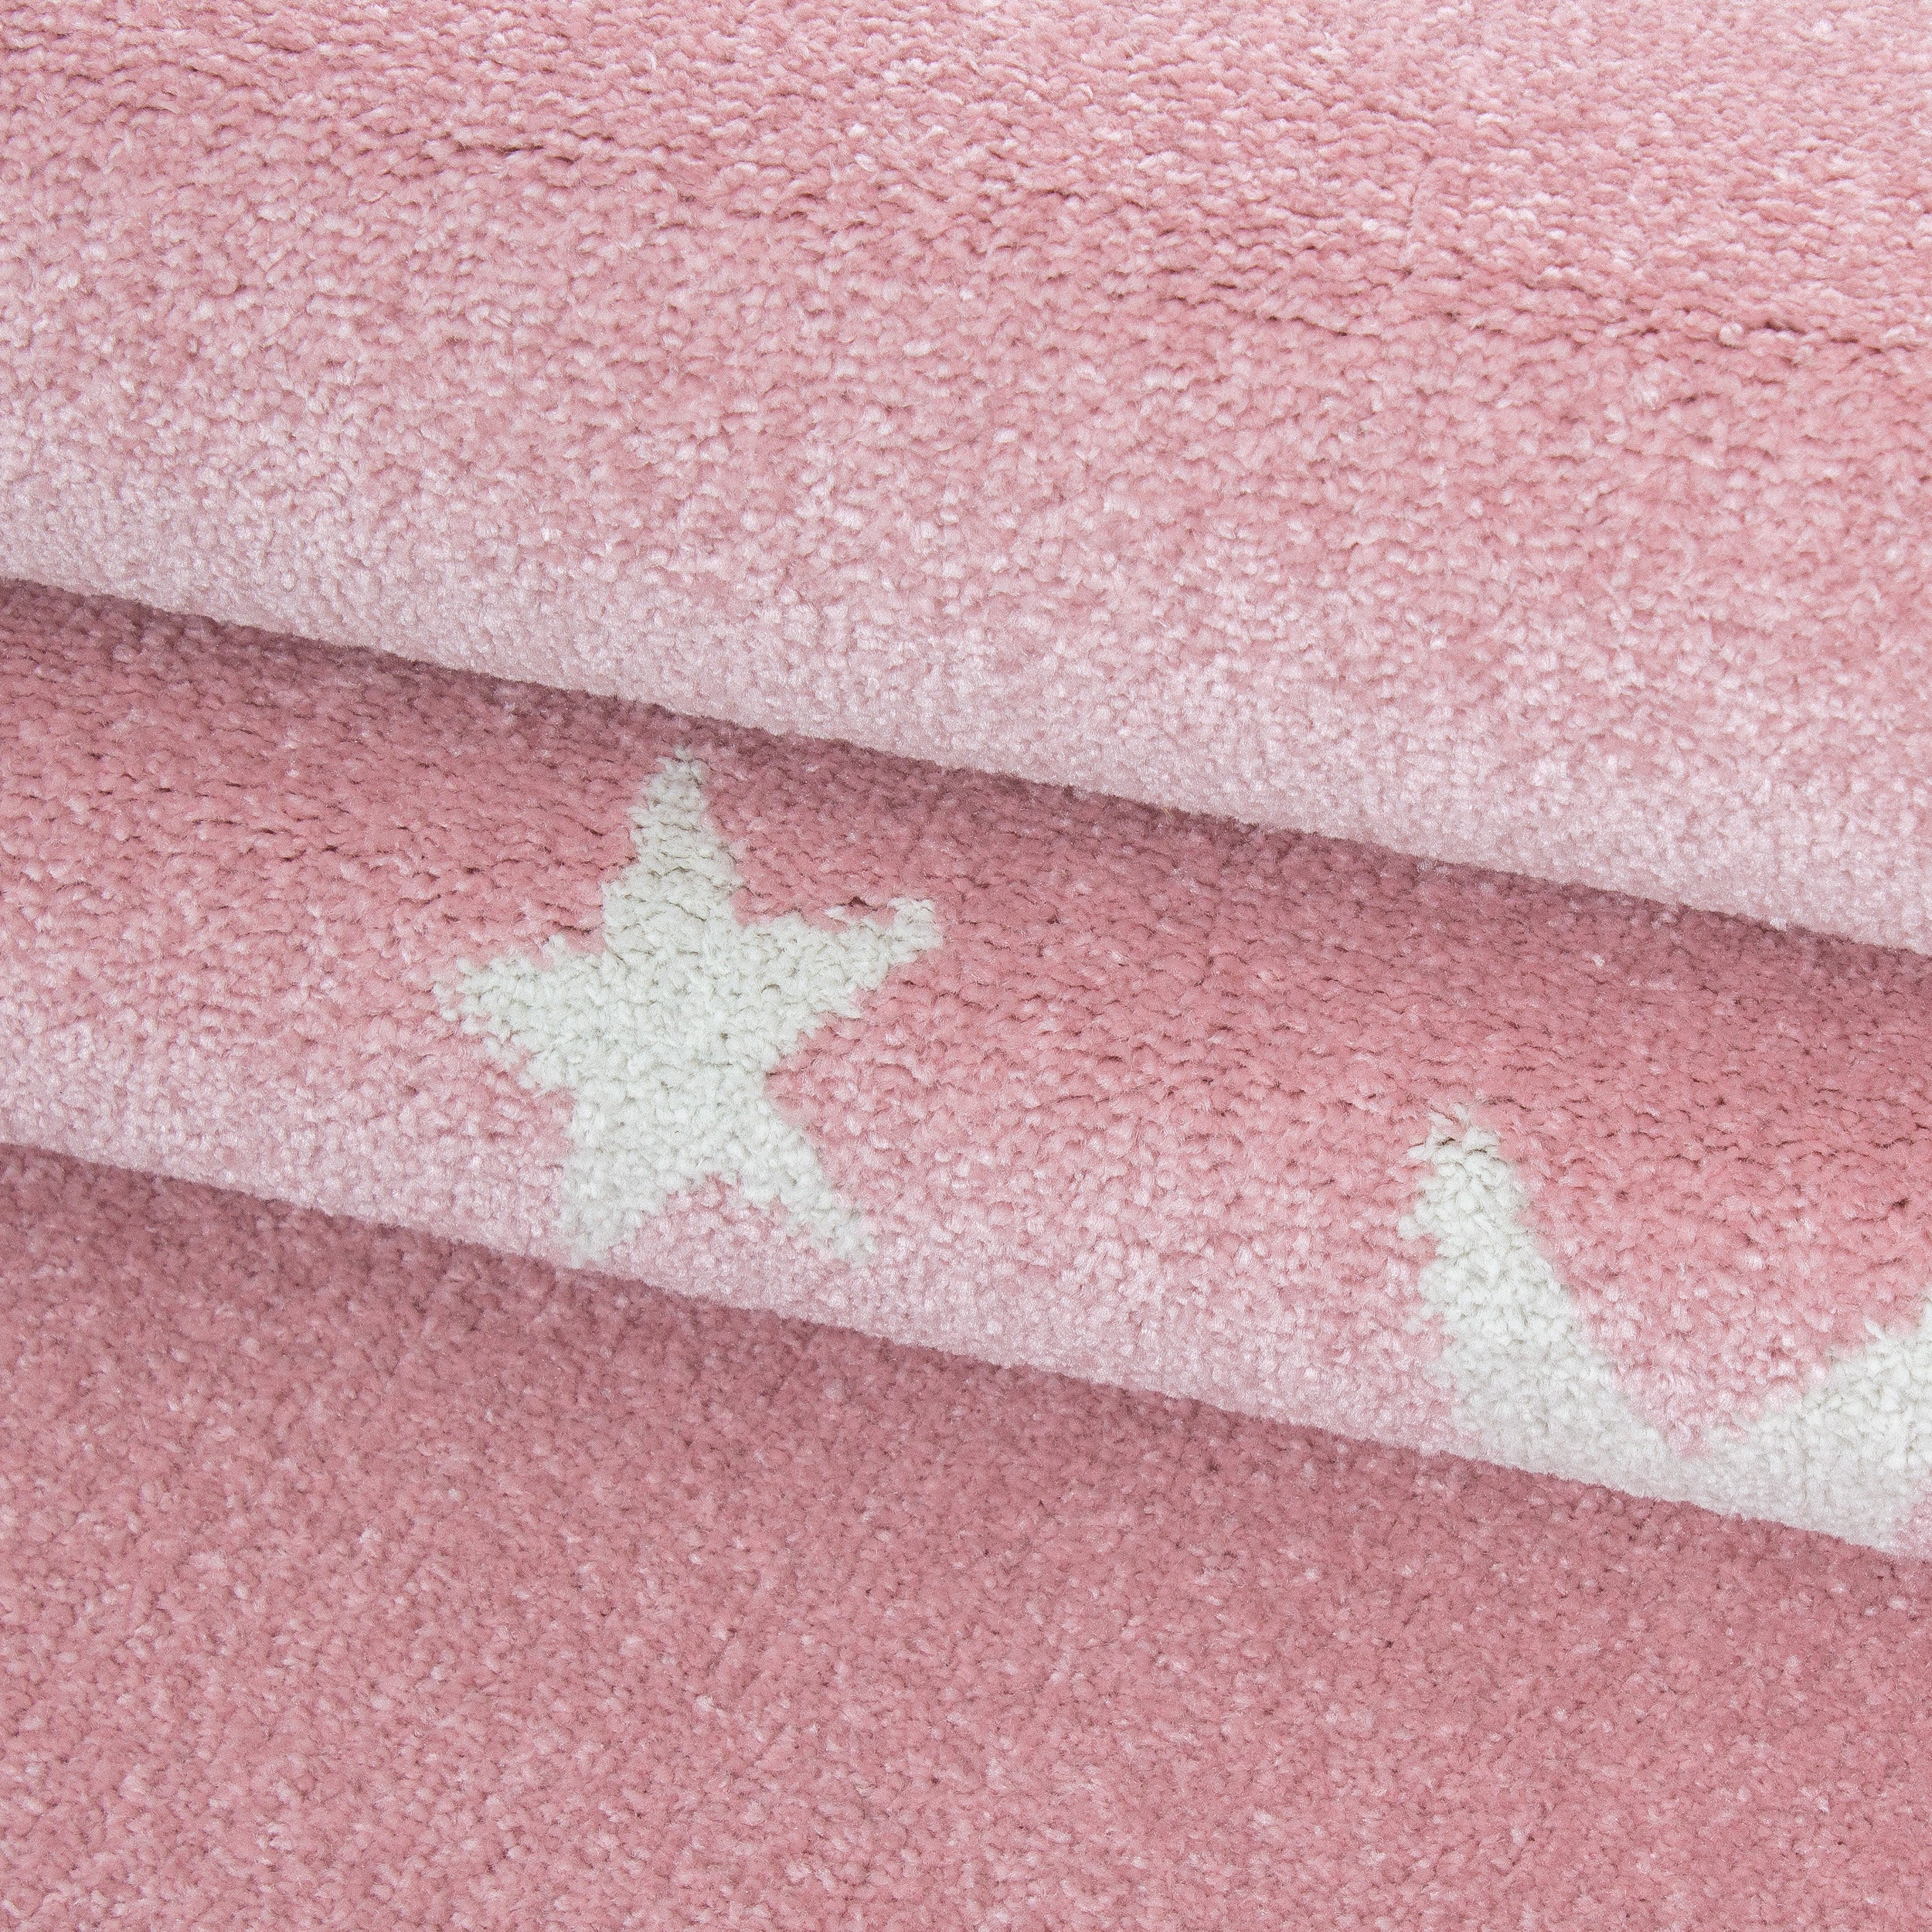 Kurzflor Kinderteppich Sterne Design Kinderzimmer Teppich Soft Farbe Pink Weiss